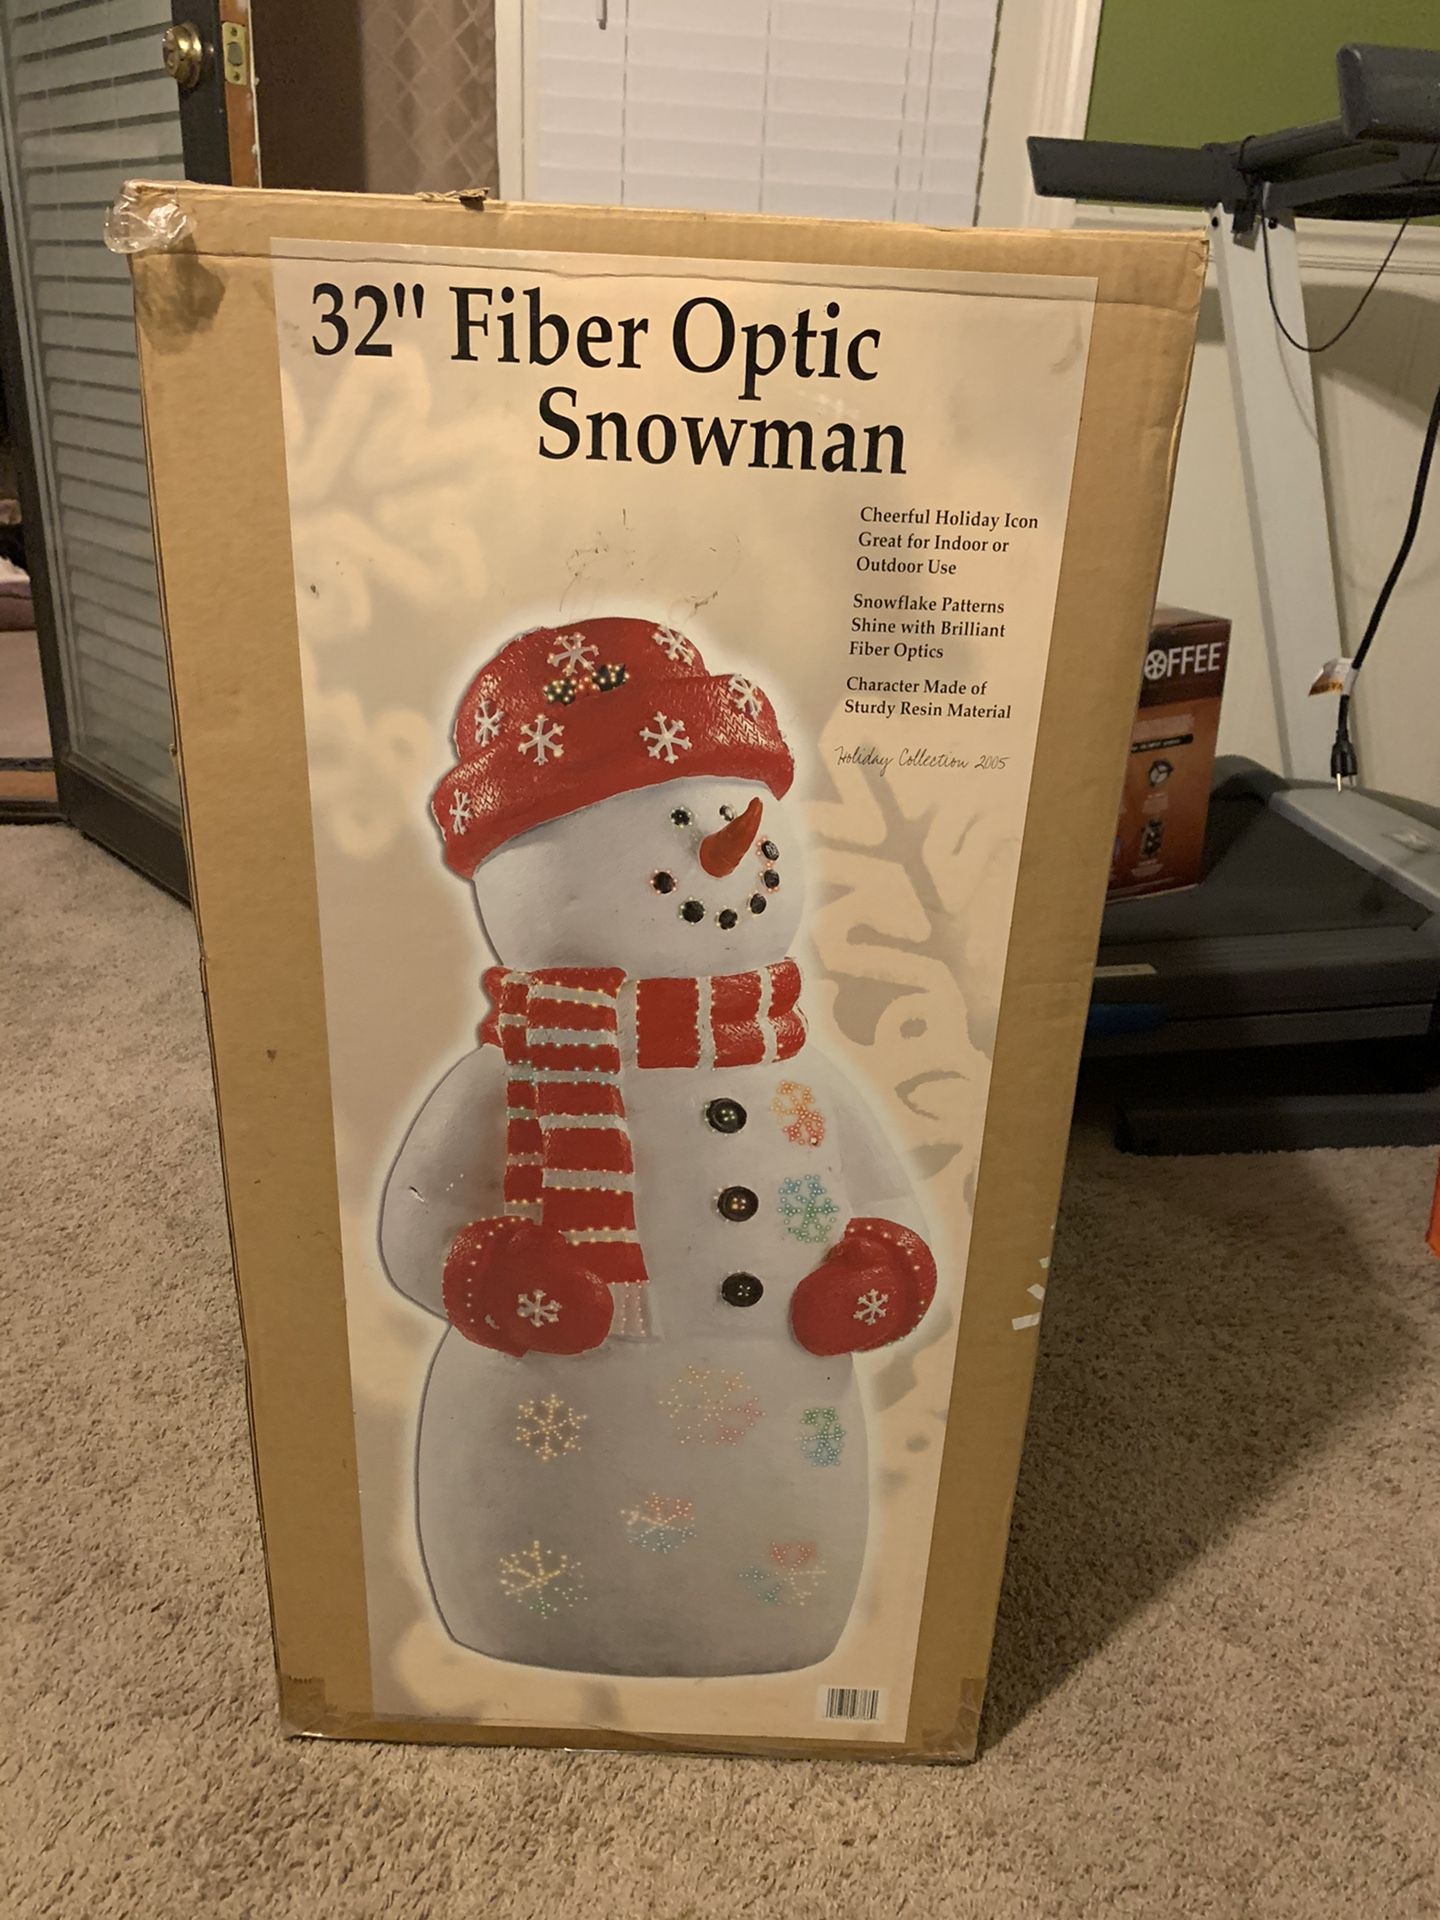 Fiber optic snowman